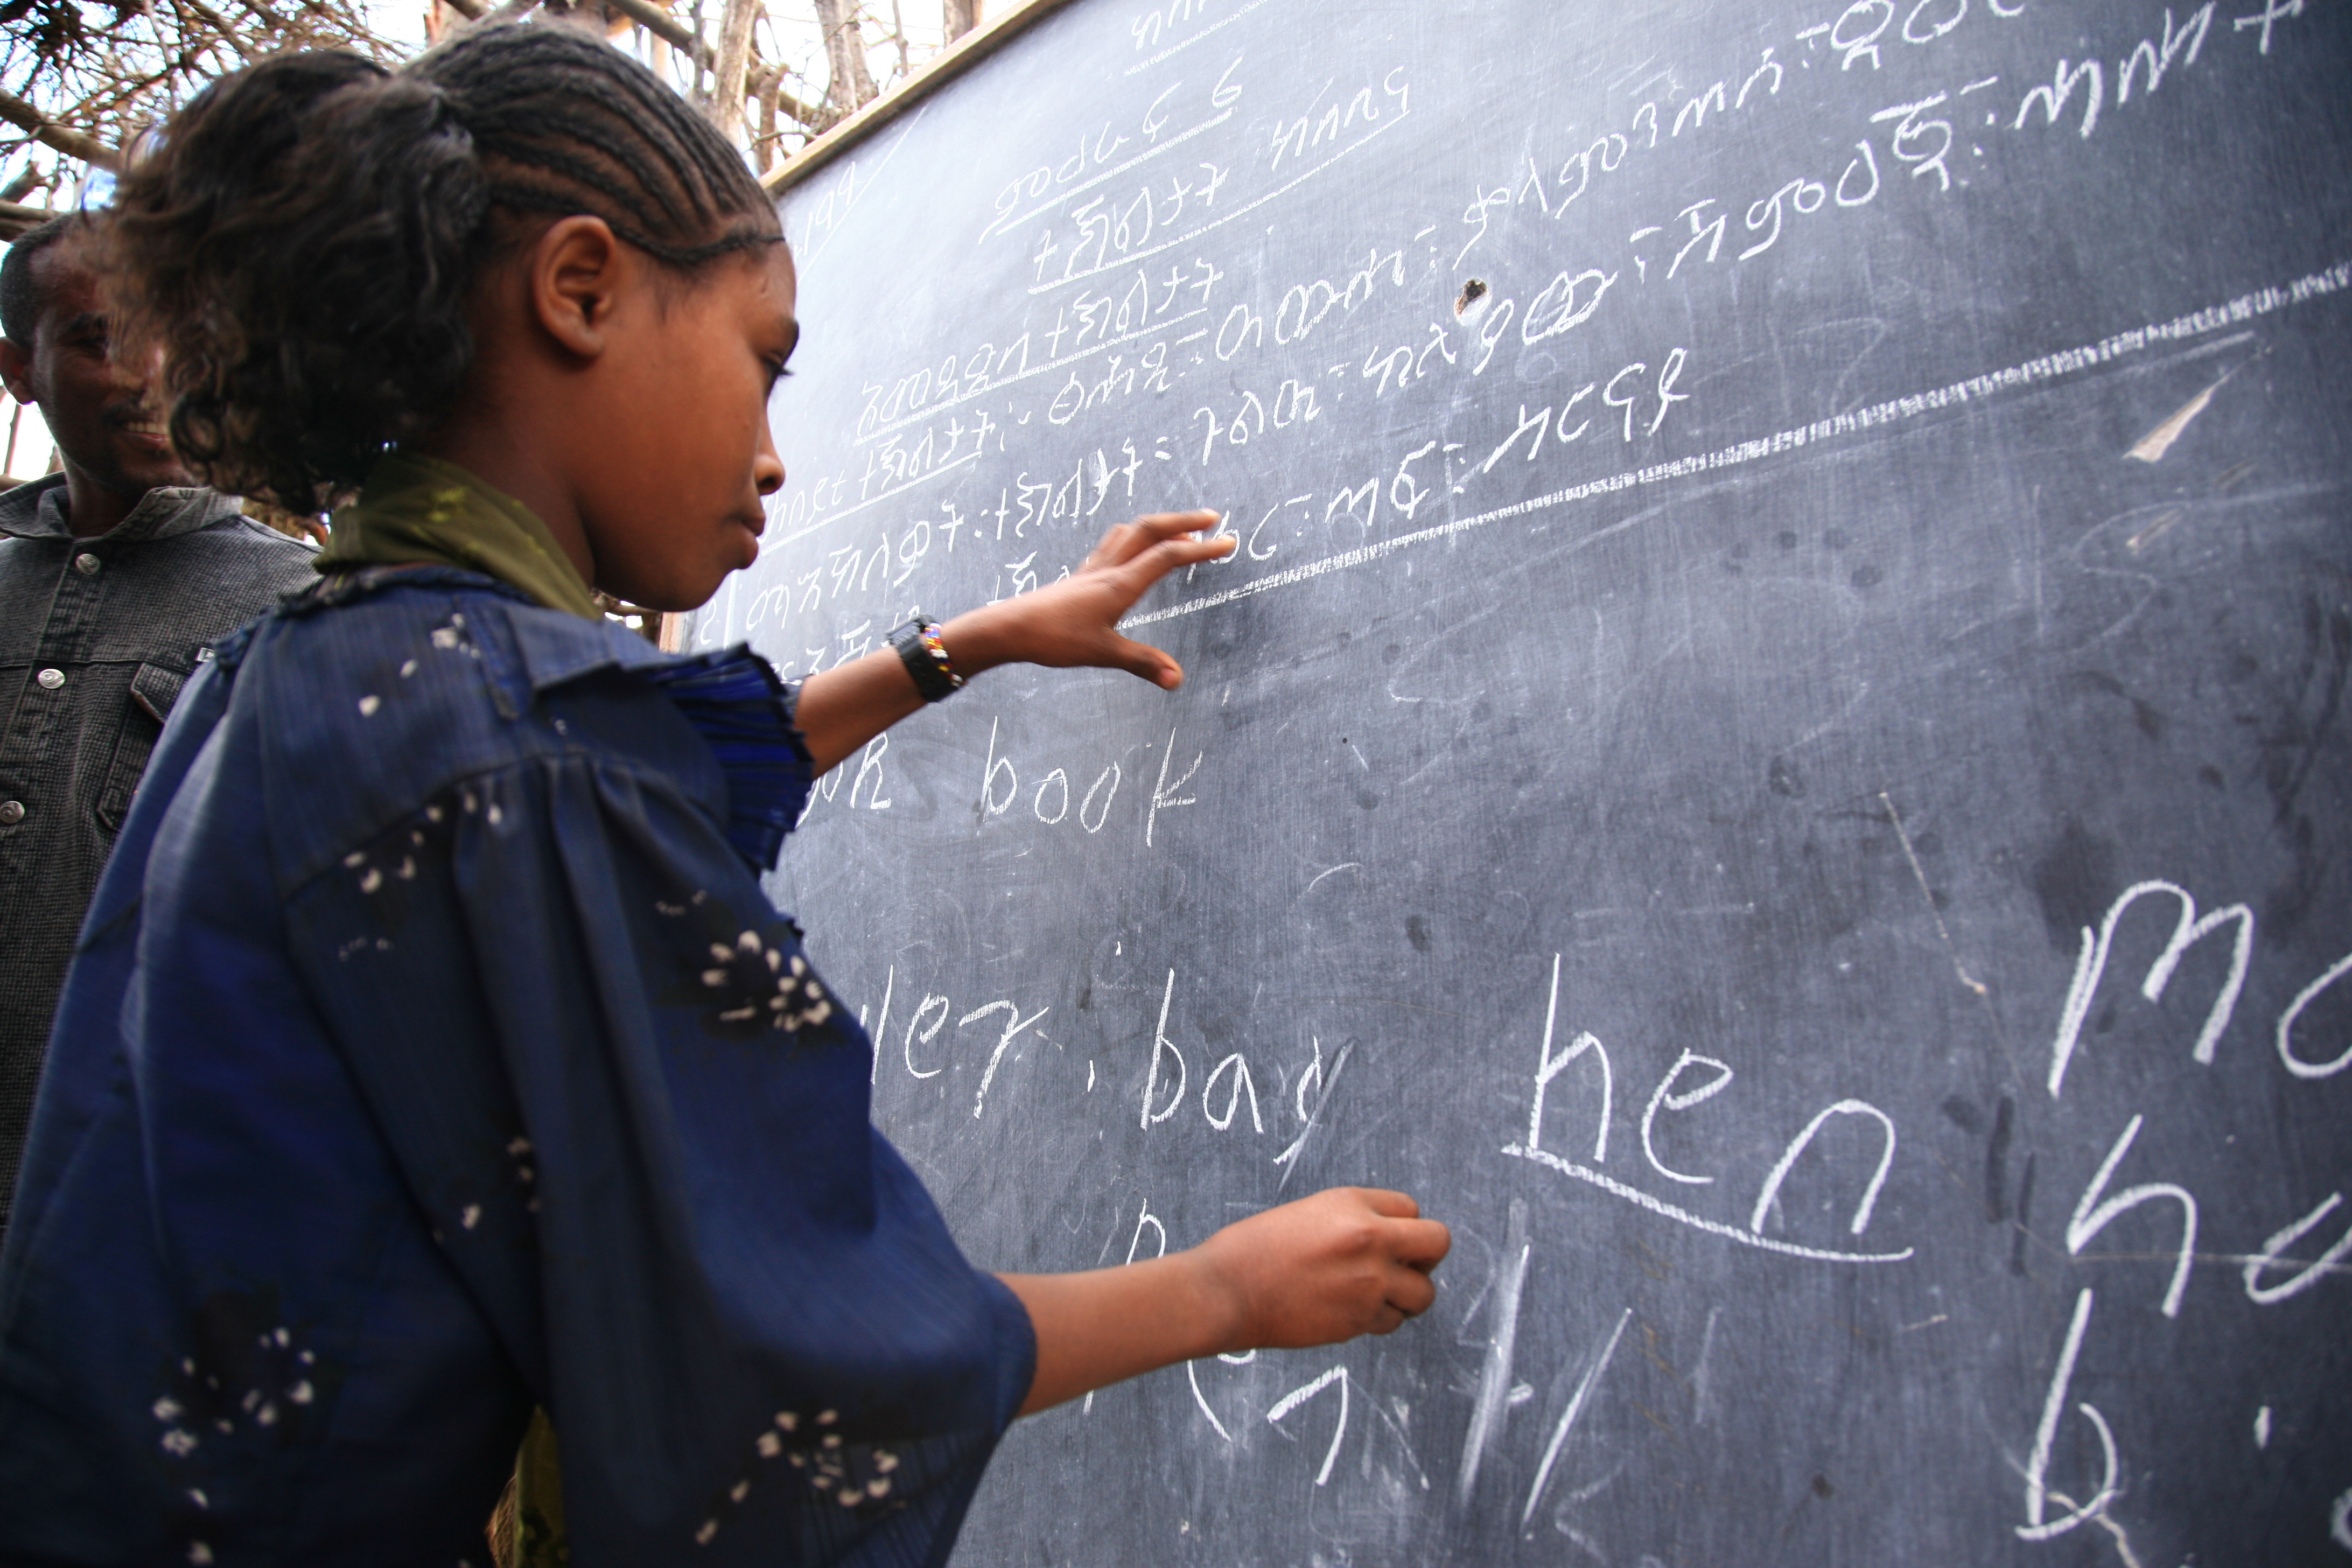 Una studentessa con un docente. Migliorare la formazione universitaria permettera` all'Etiopia di avere docenti preparati.